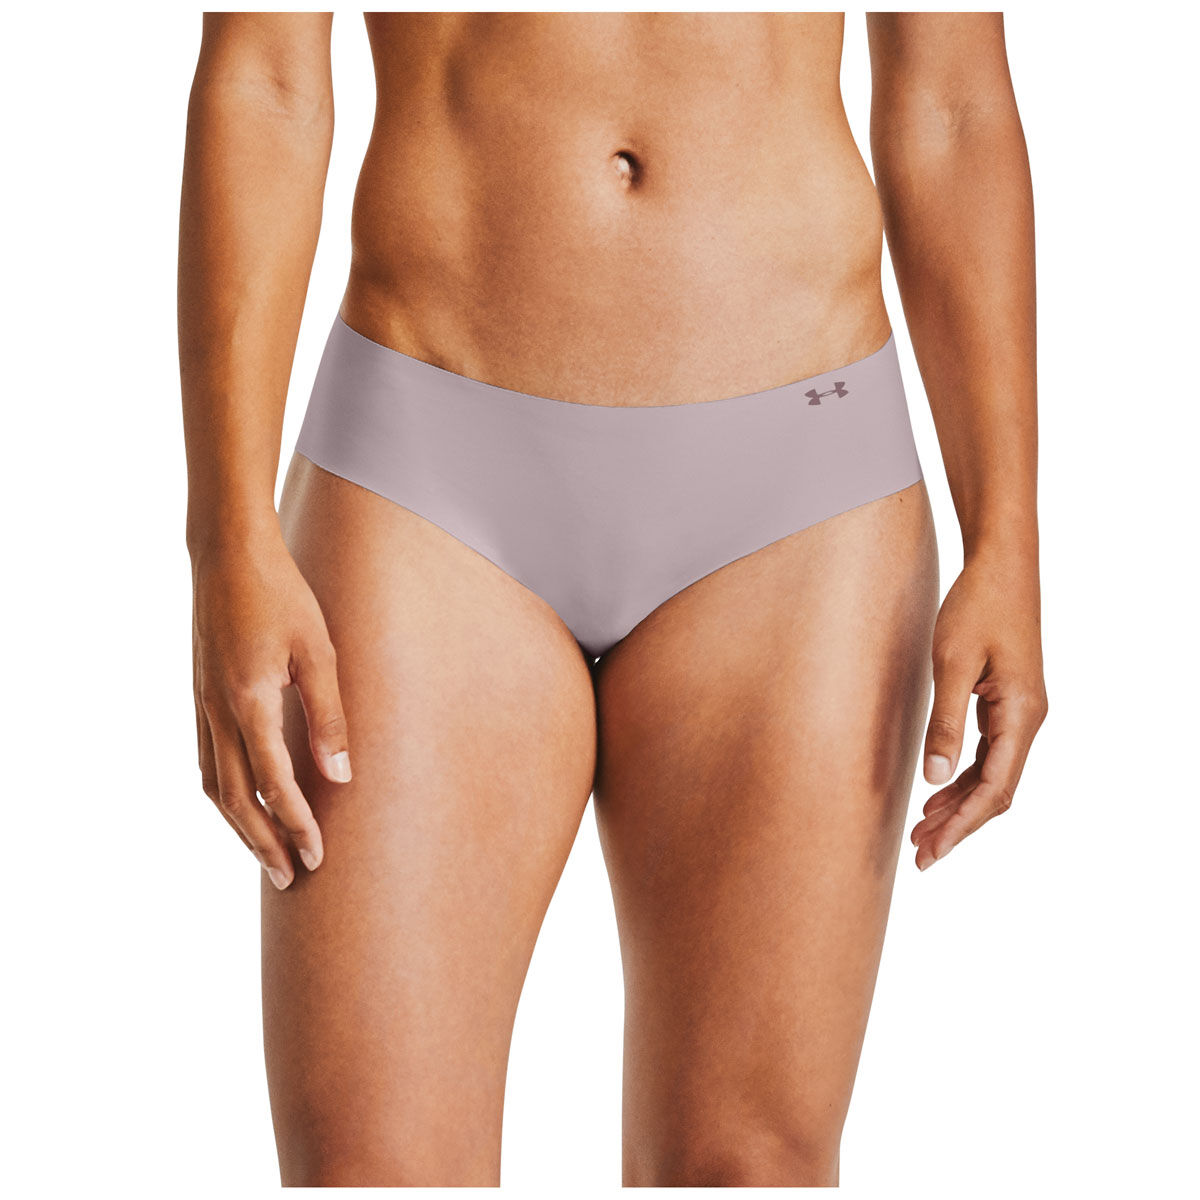 Women's Sports Underwear & Briefs - Under Armour AU